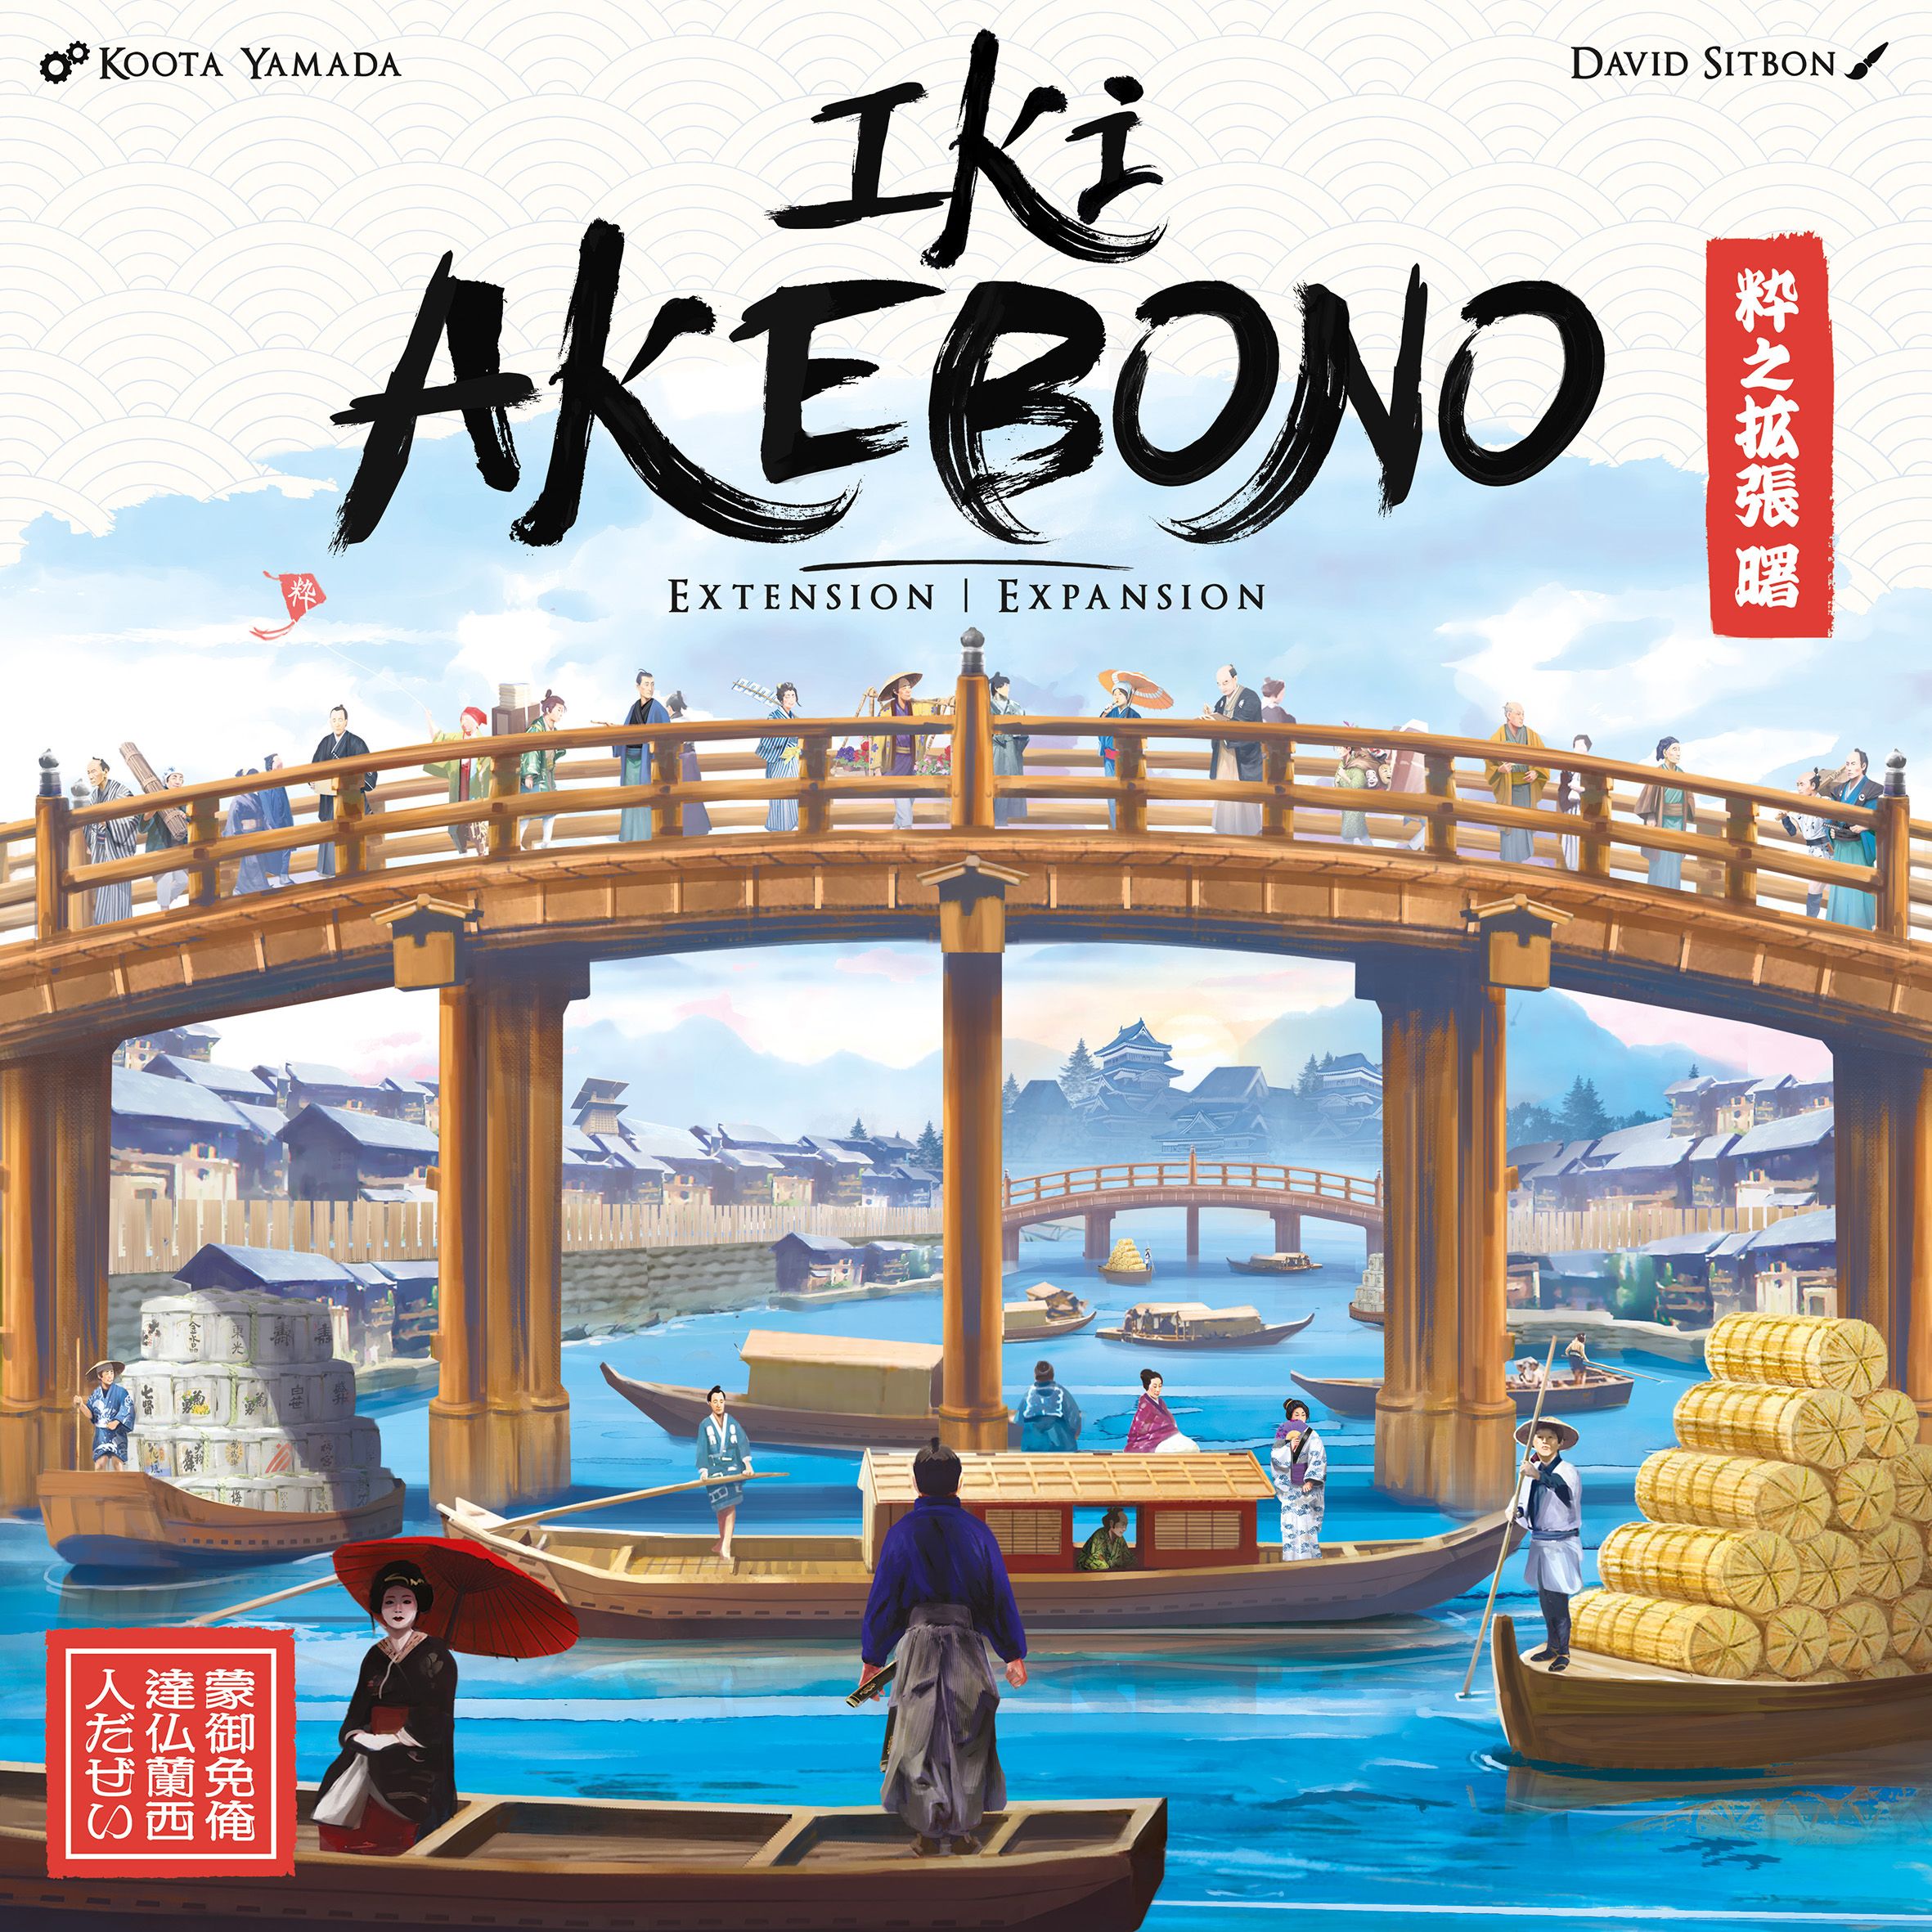 IKI - Akebono